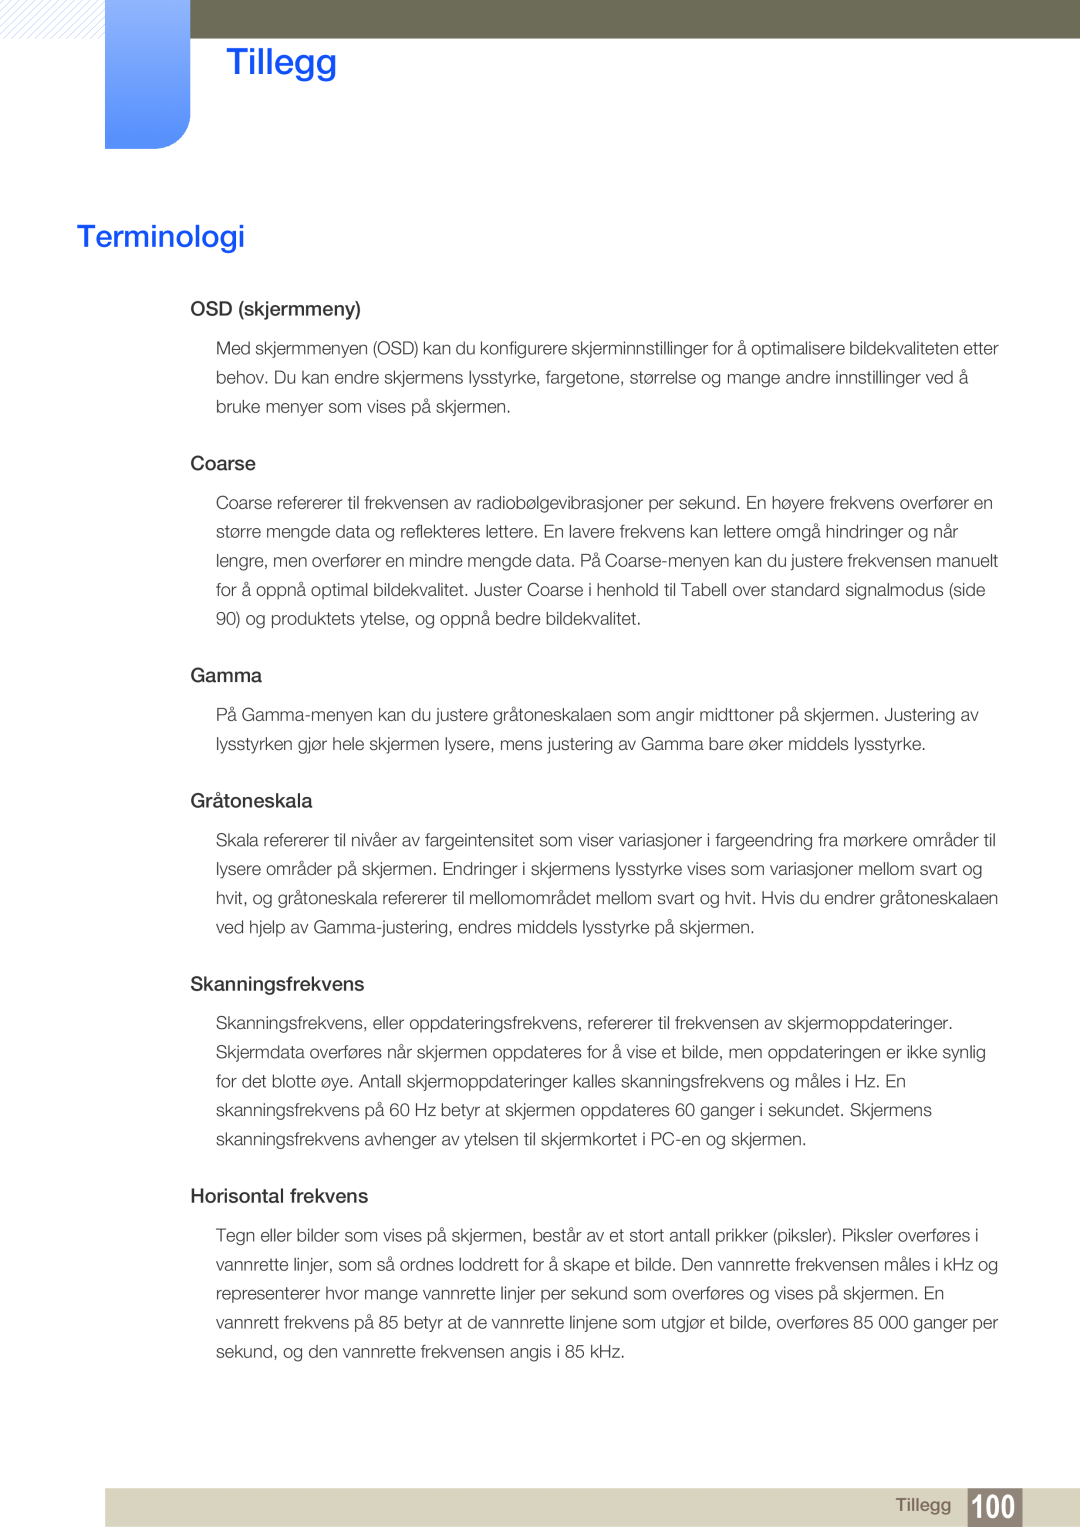 Samsung LF19TSWTBDN/EN manual Terminologi, Tillegg, OSD skjermmeny, Coarse, Gamma, Gråtoneskala, Skanningsfrekvens 